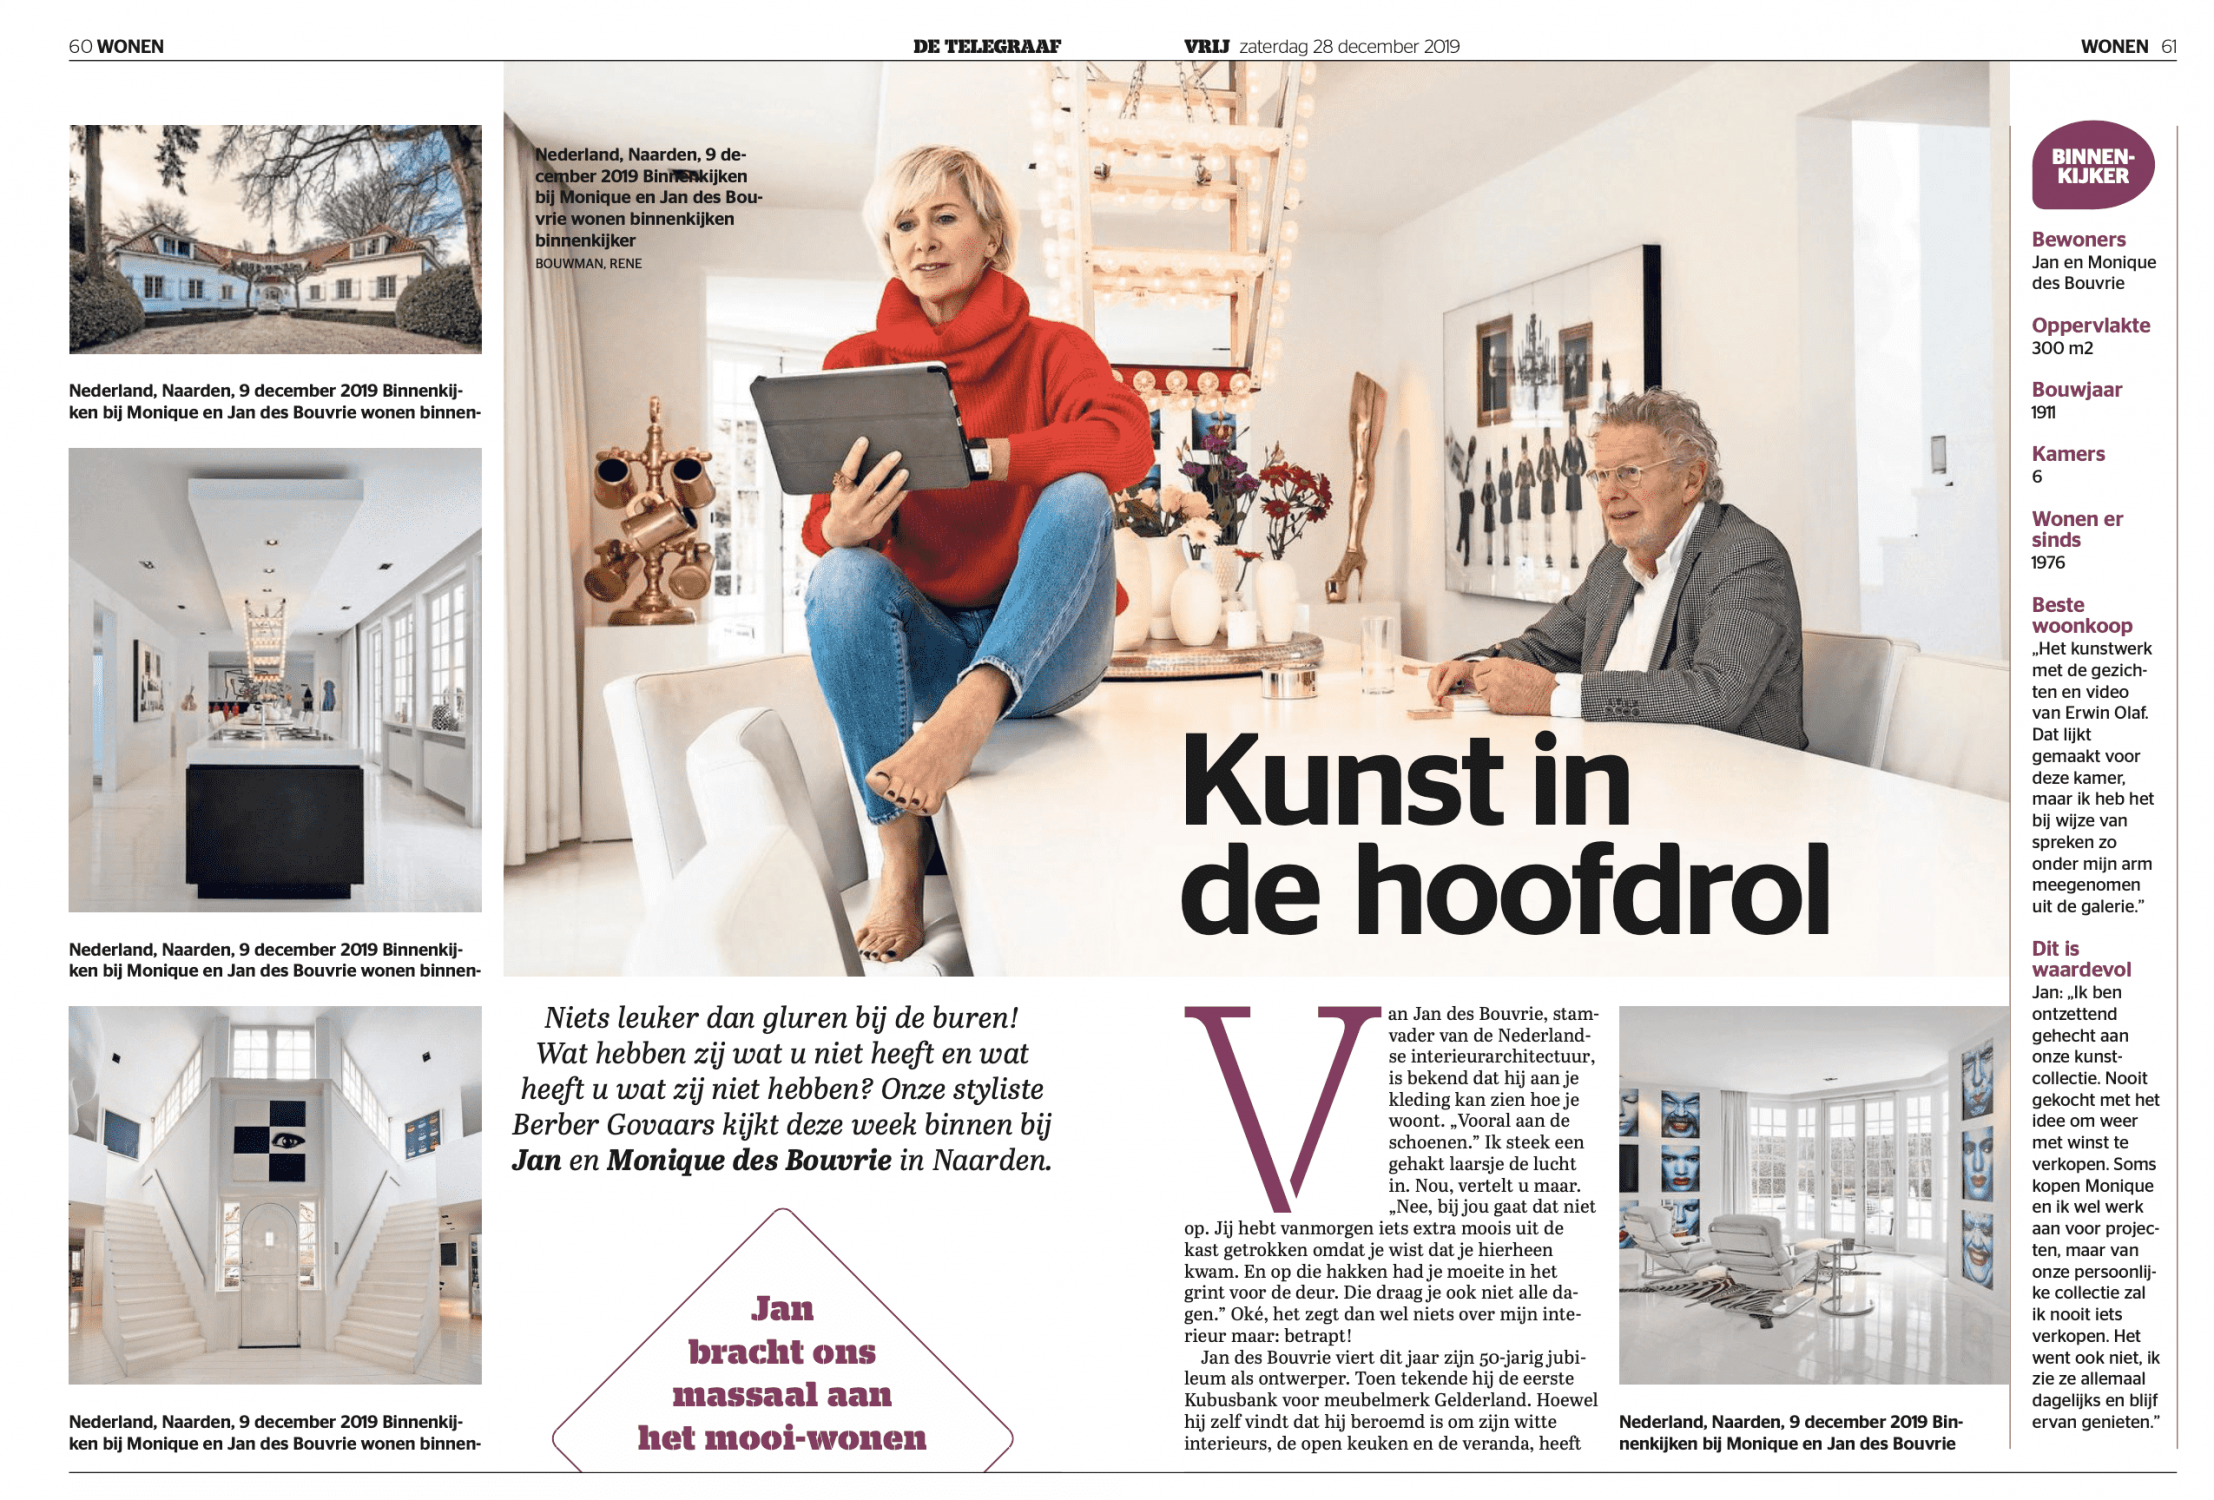 Foto's van het huis van Jan des Bouvrie en een interview over de villa in Naarden.